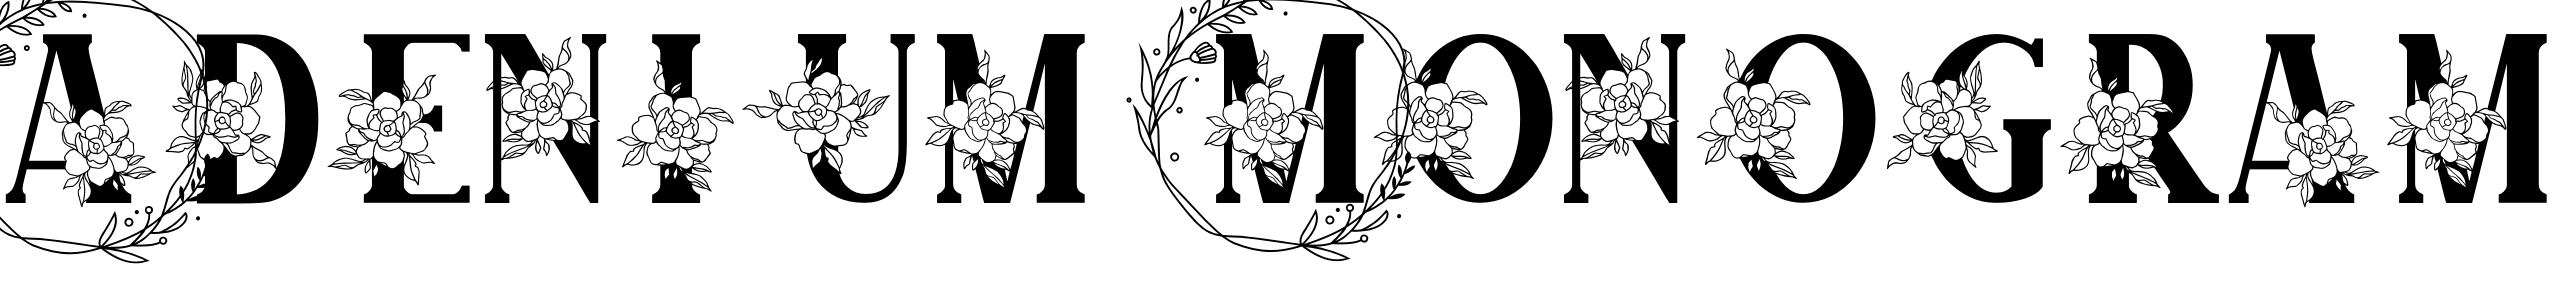 Adenium Monogram